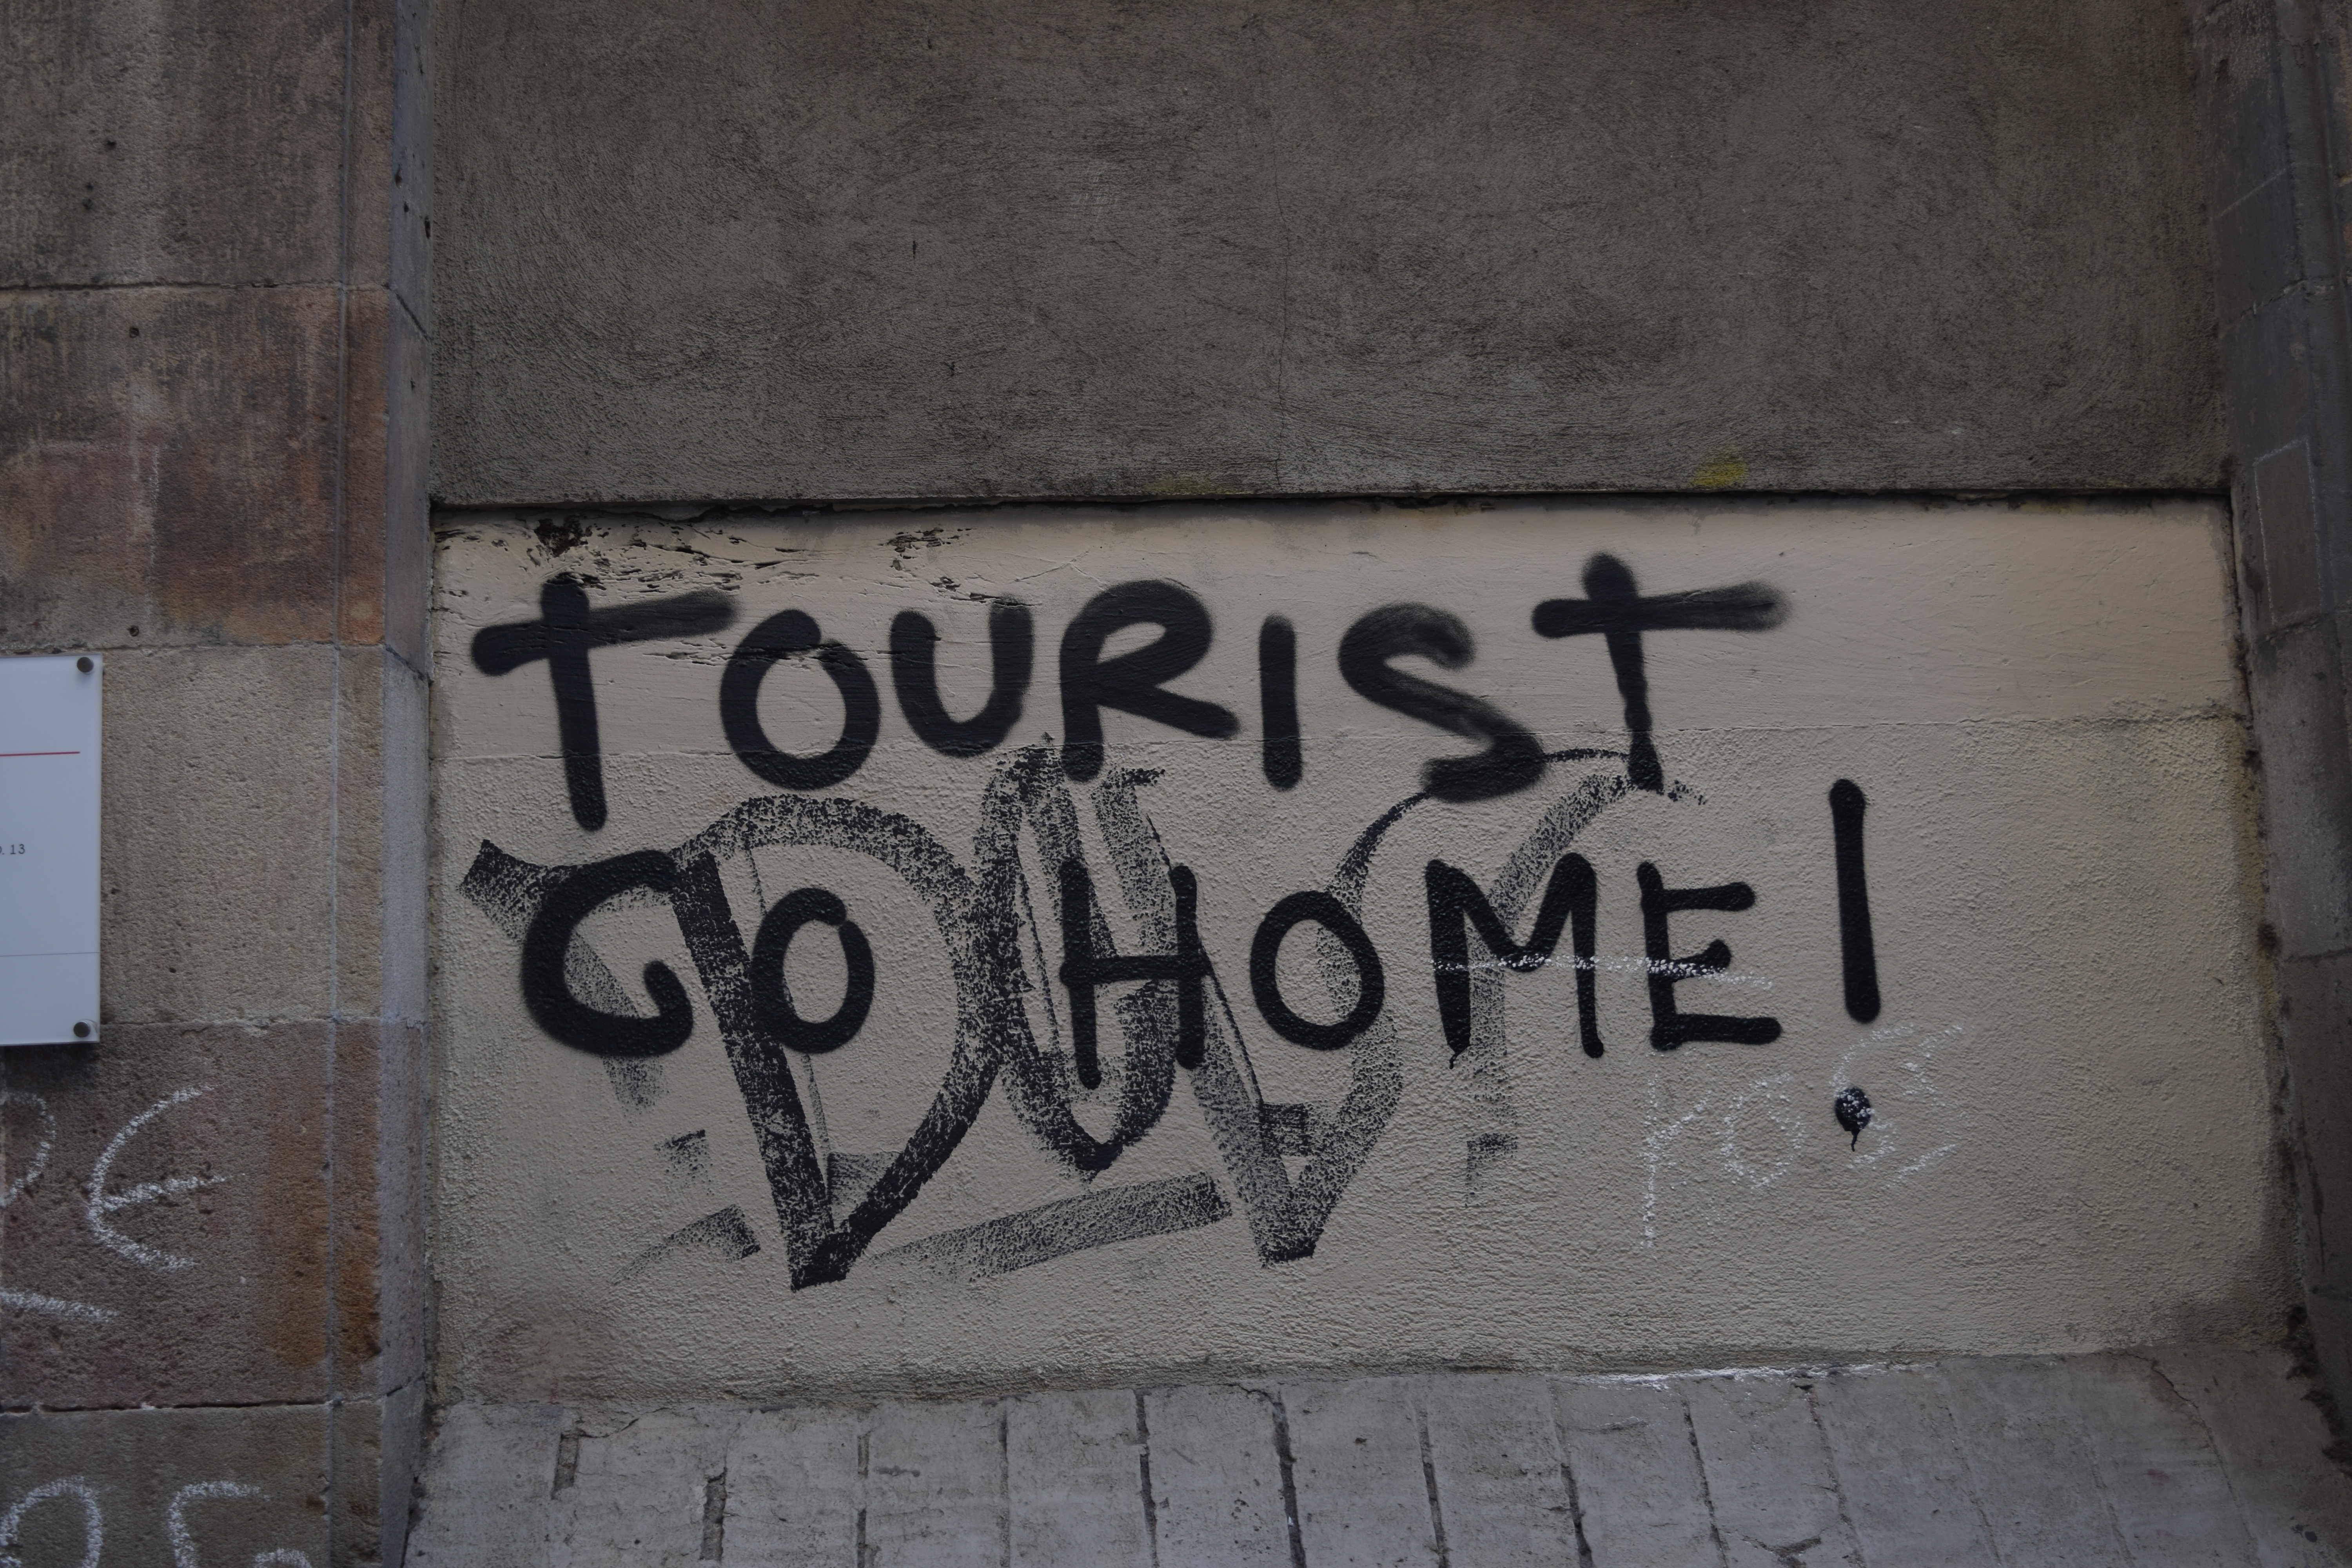 Tourist go home!